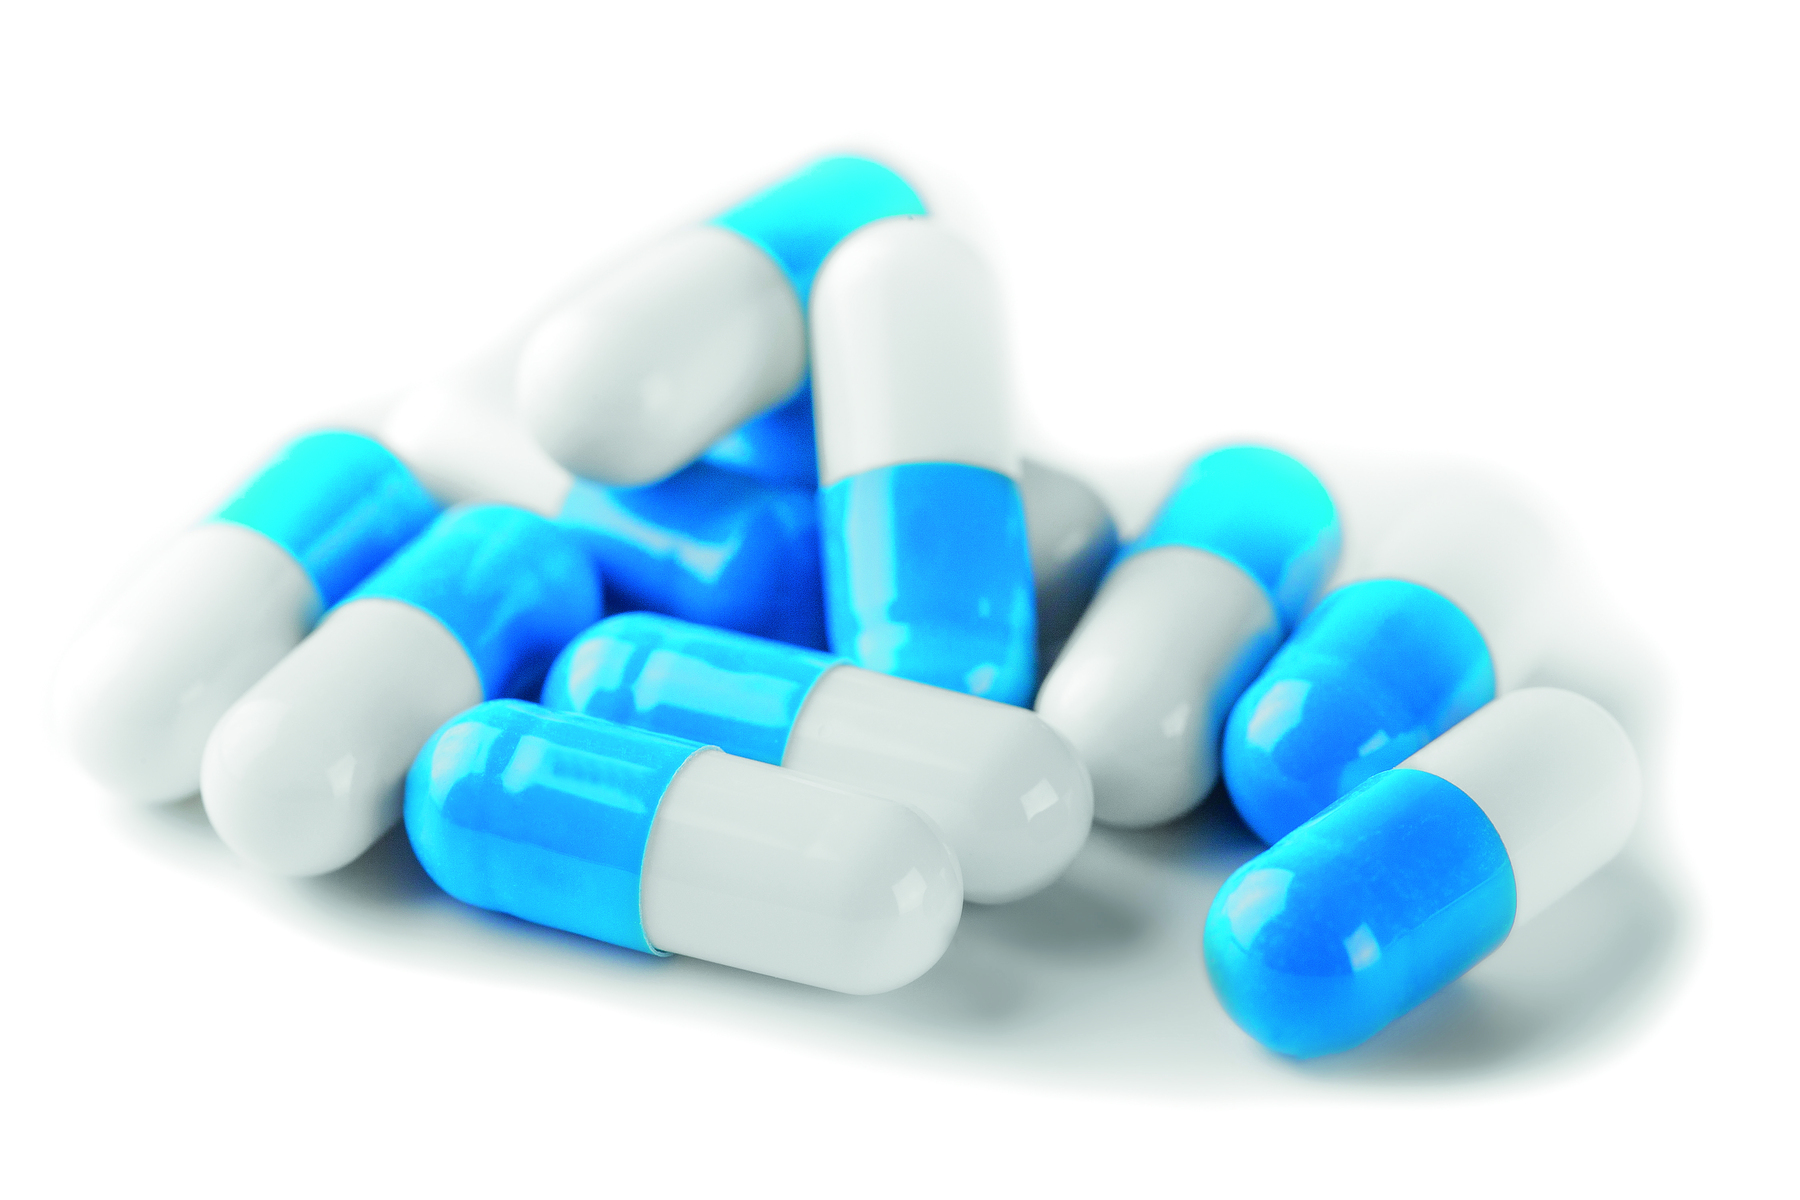 Fotografia de cápsulas de medicamento, com metade branca e metade azul.